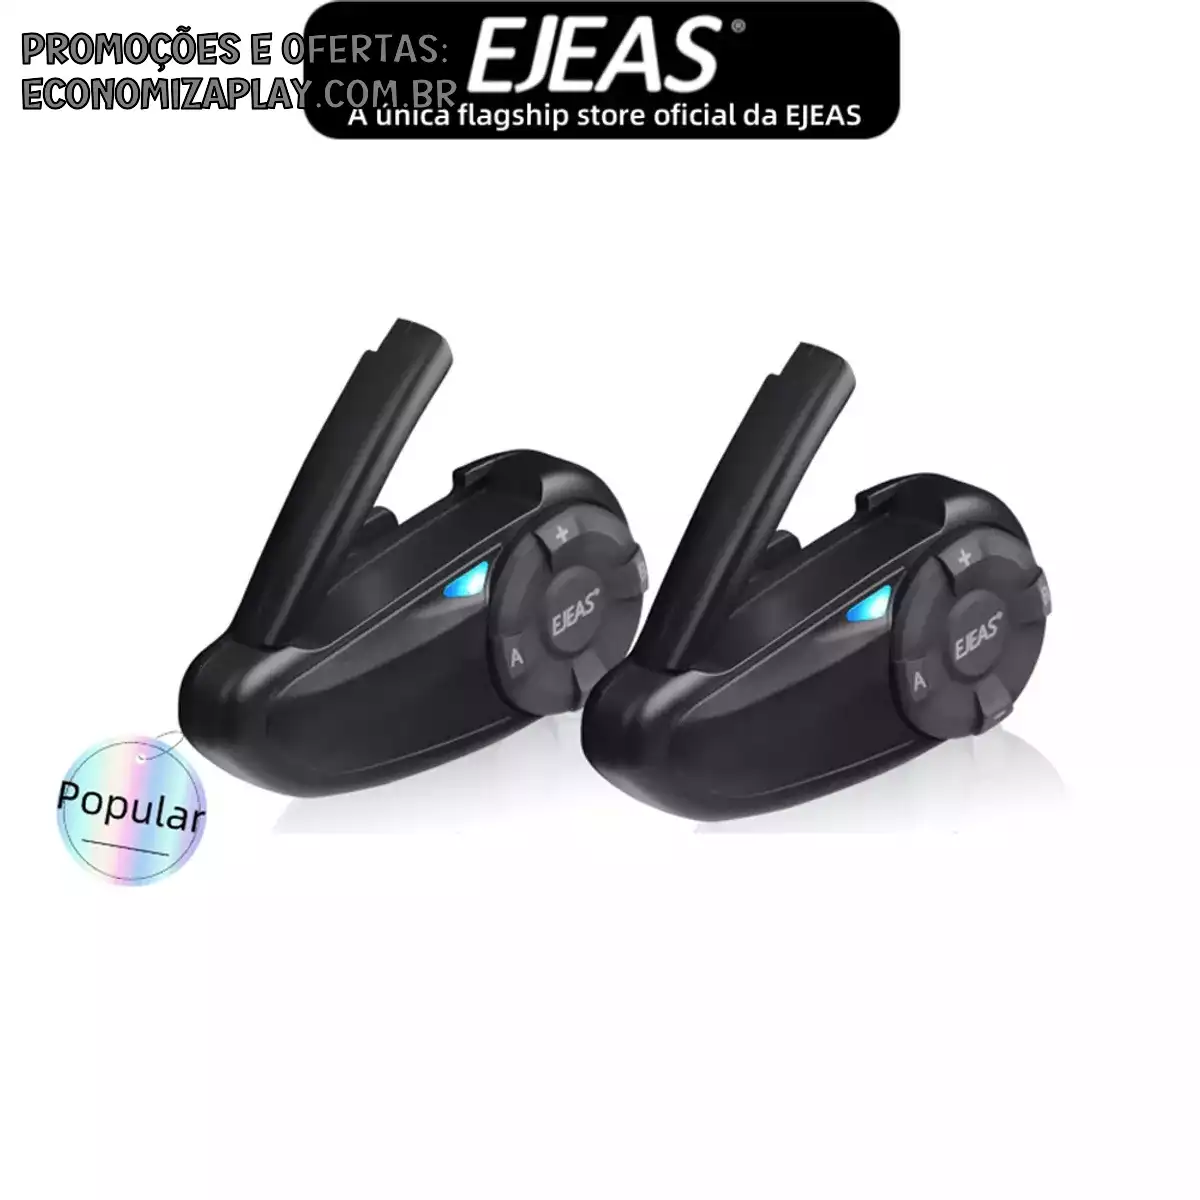 EJEAS Q7 Capacete de motocicleta Bluetooth Intercom Headset Bluetooth 51 à prova dágua 2 pilotos falam ao mesmo tempo Pacote duplo